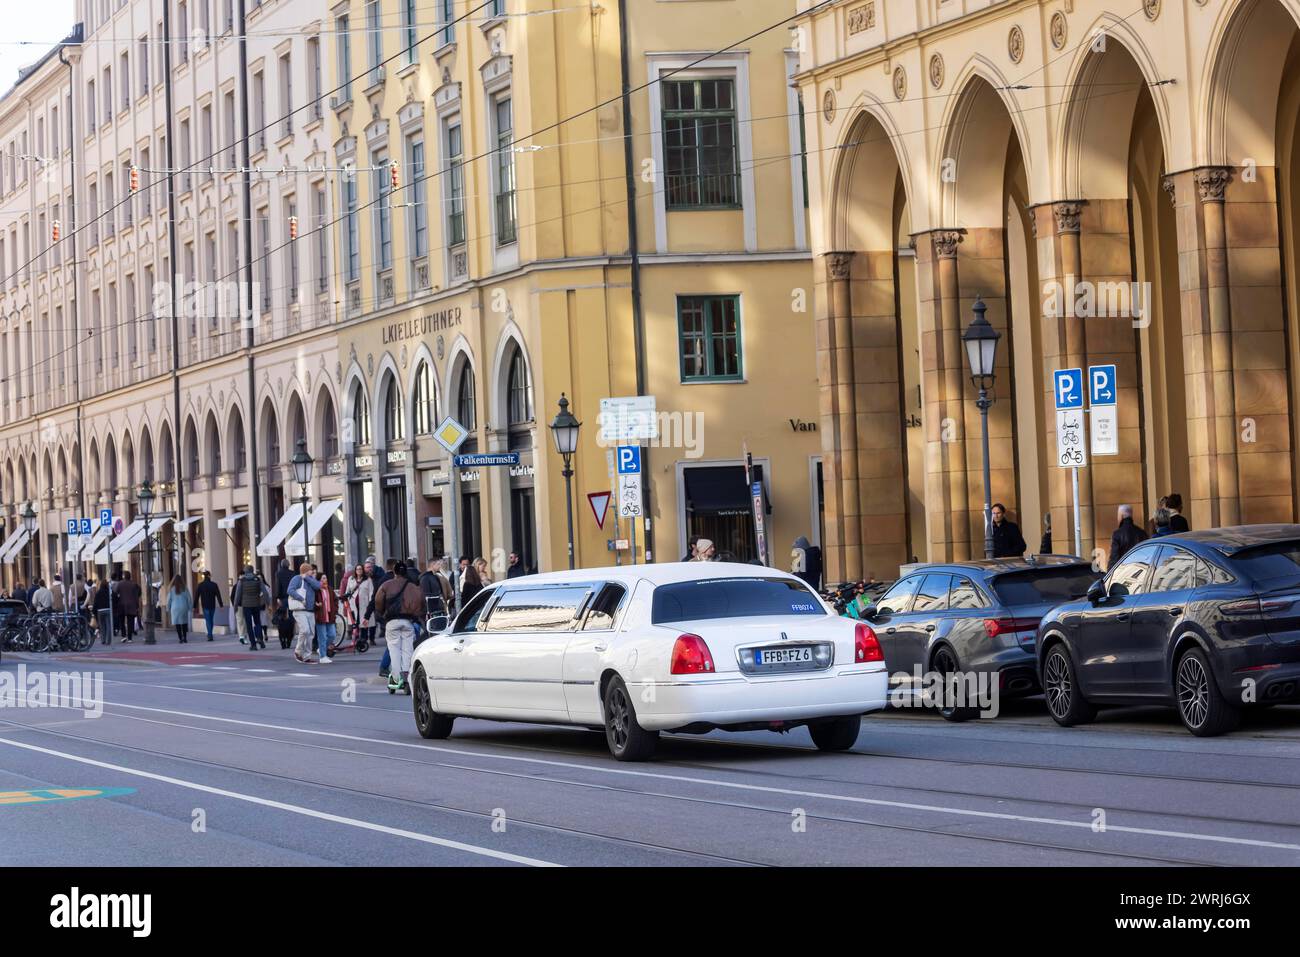 Maximilianstrasse Monaco di Baviera in un normale sabato, auto di lusso nell'esclusiva via dello shopping, Monaco, Baviera, Germania Foto Stock